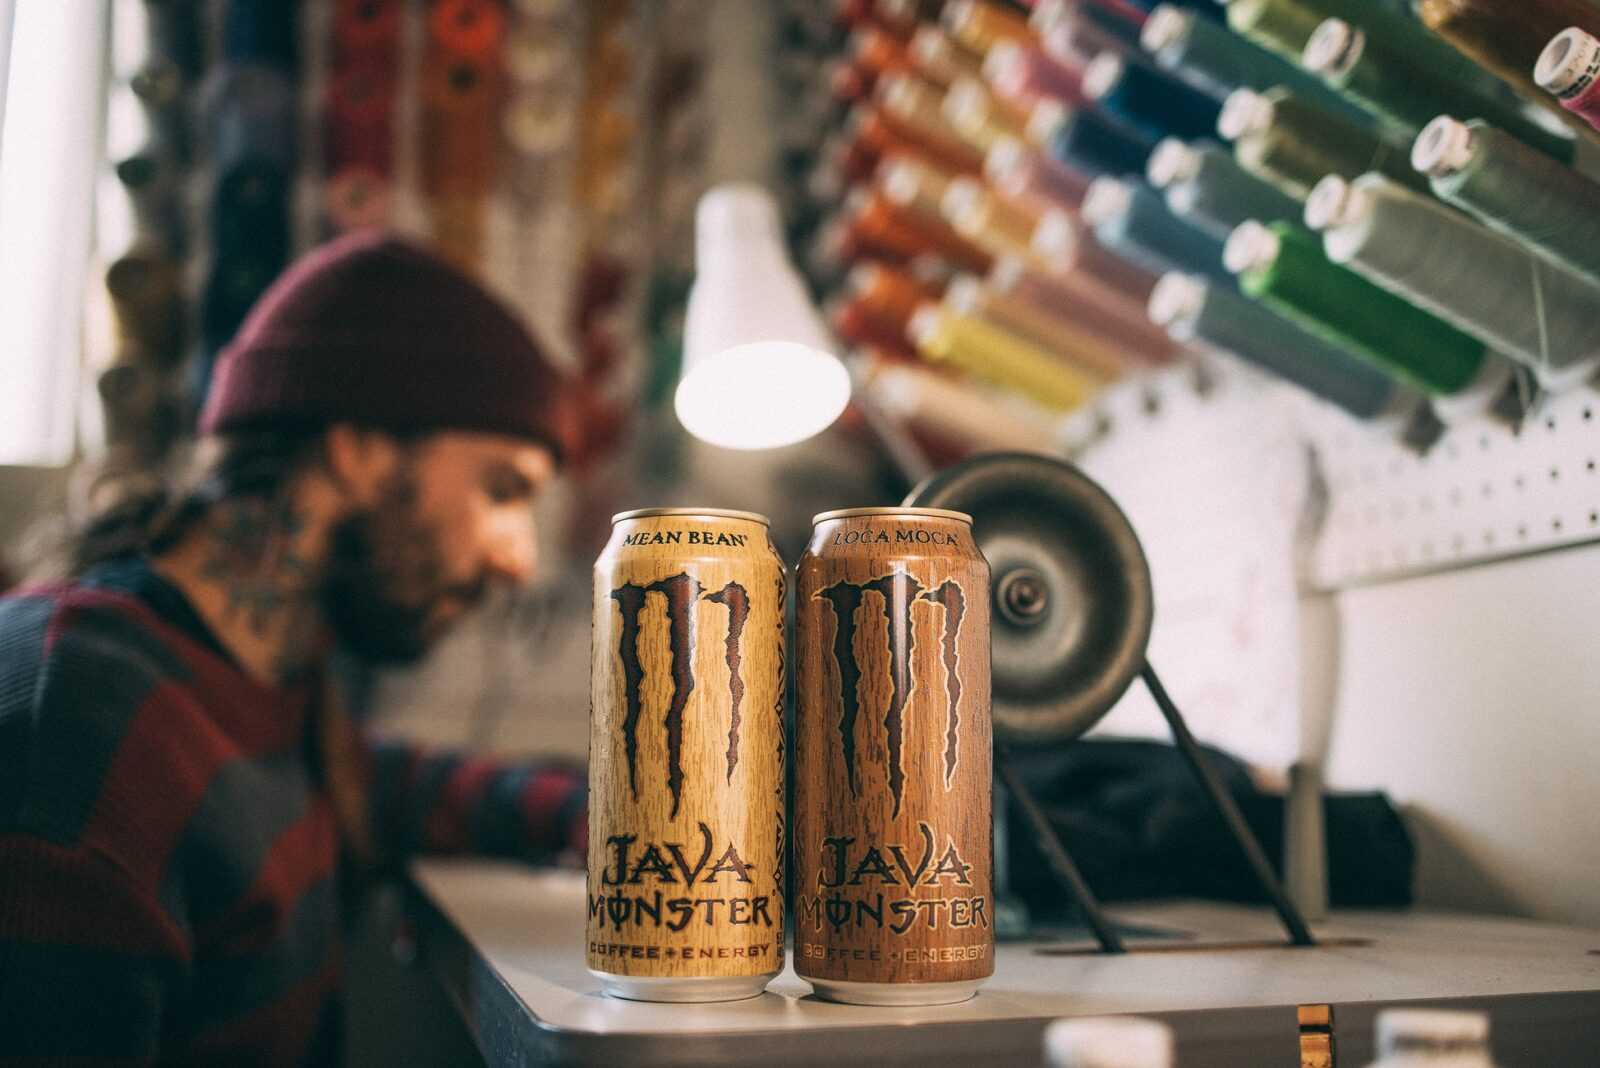 Java Monster